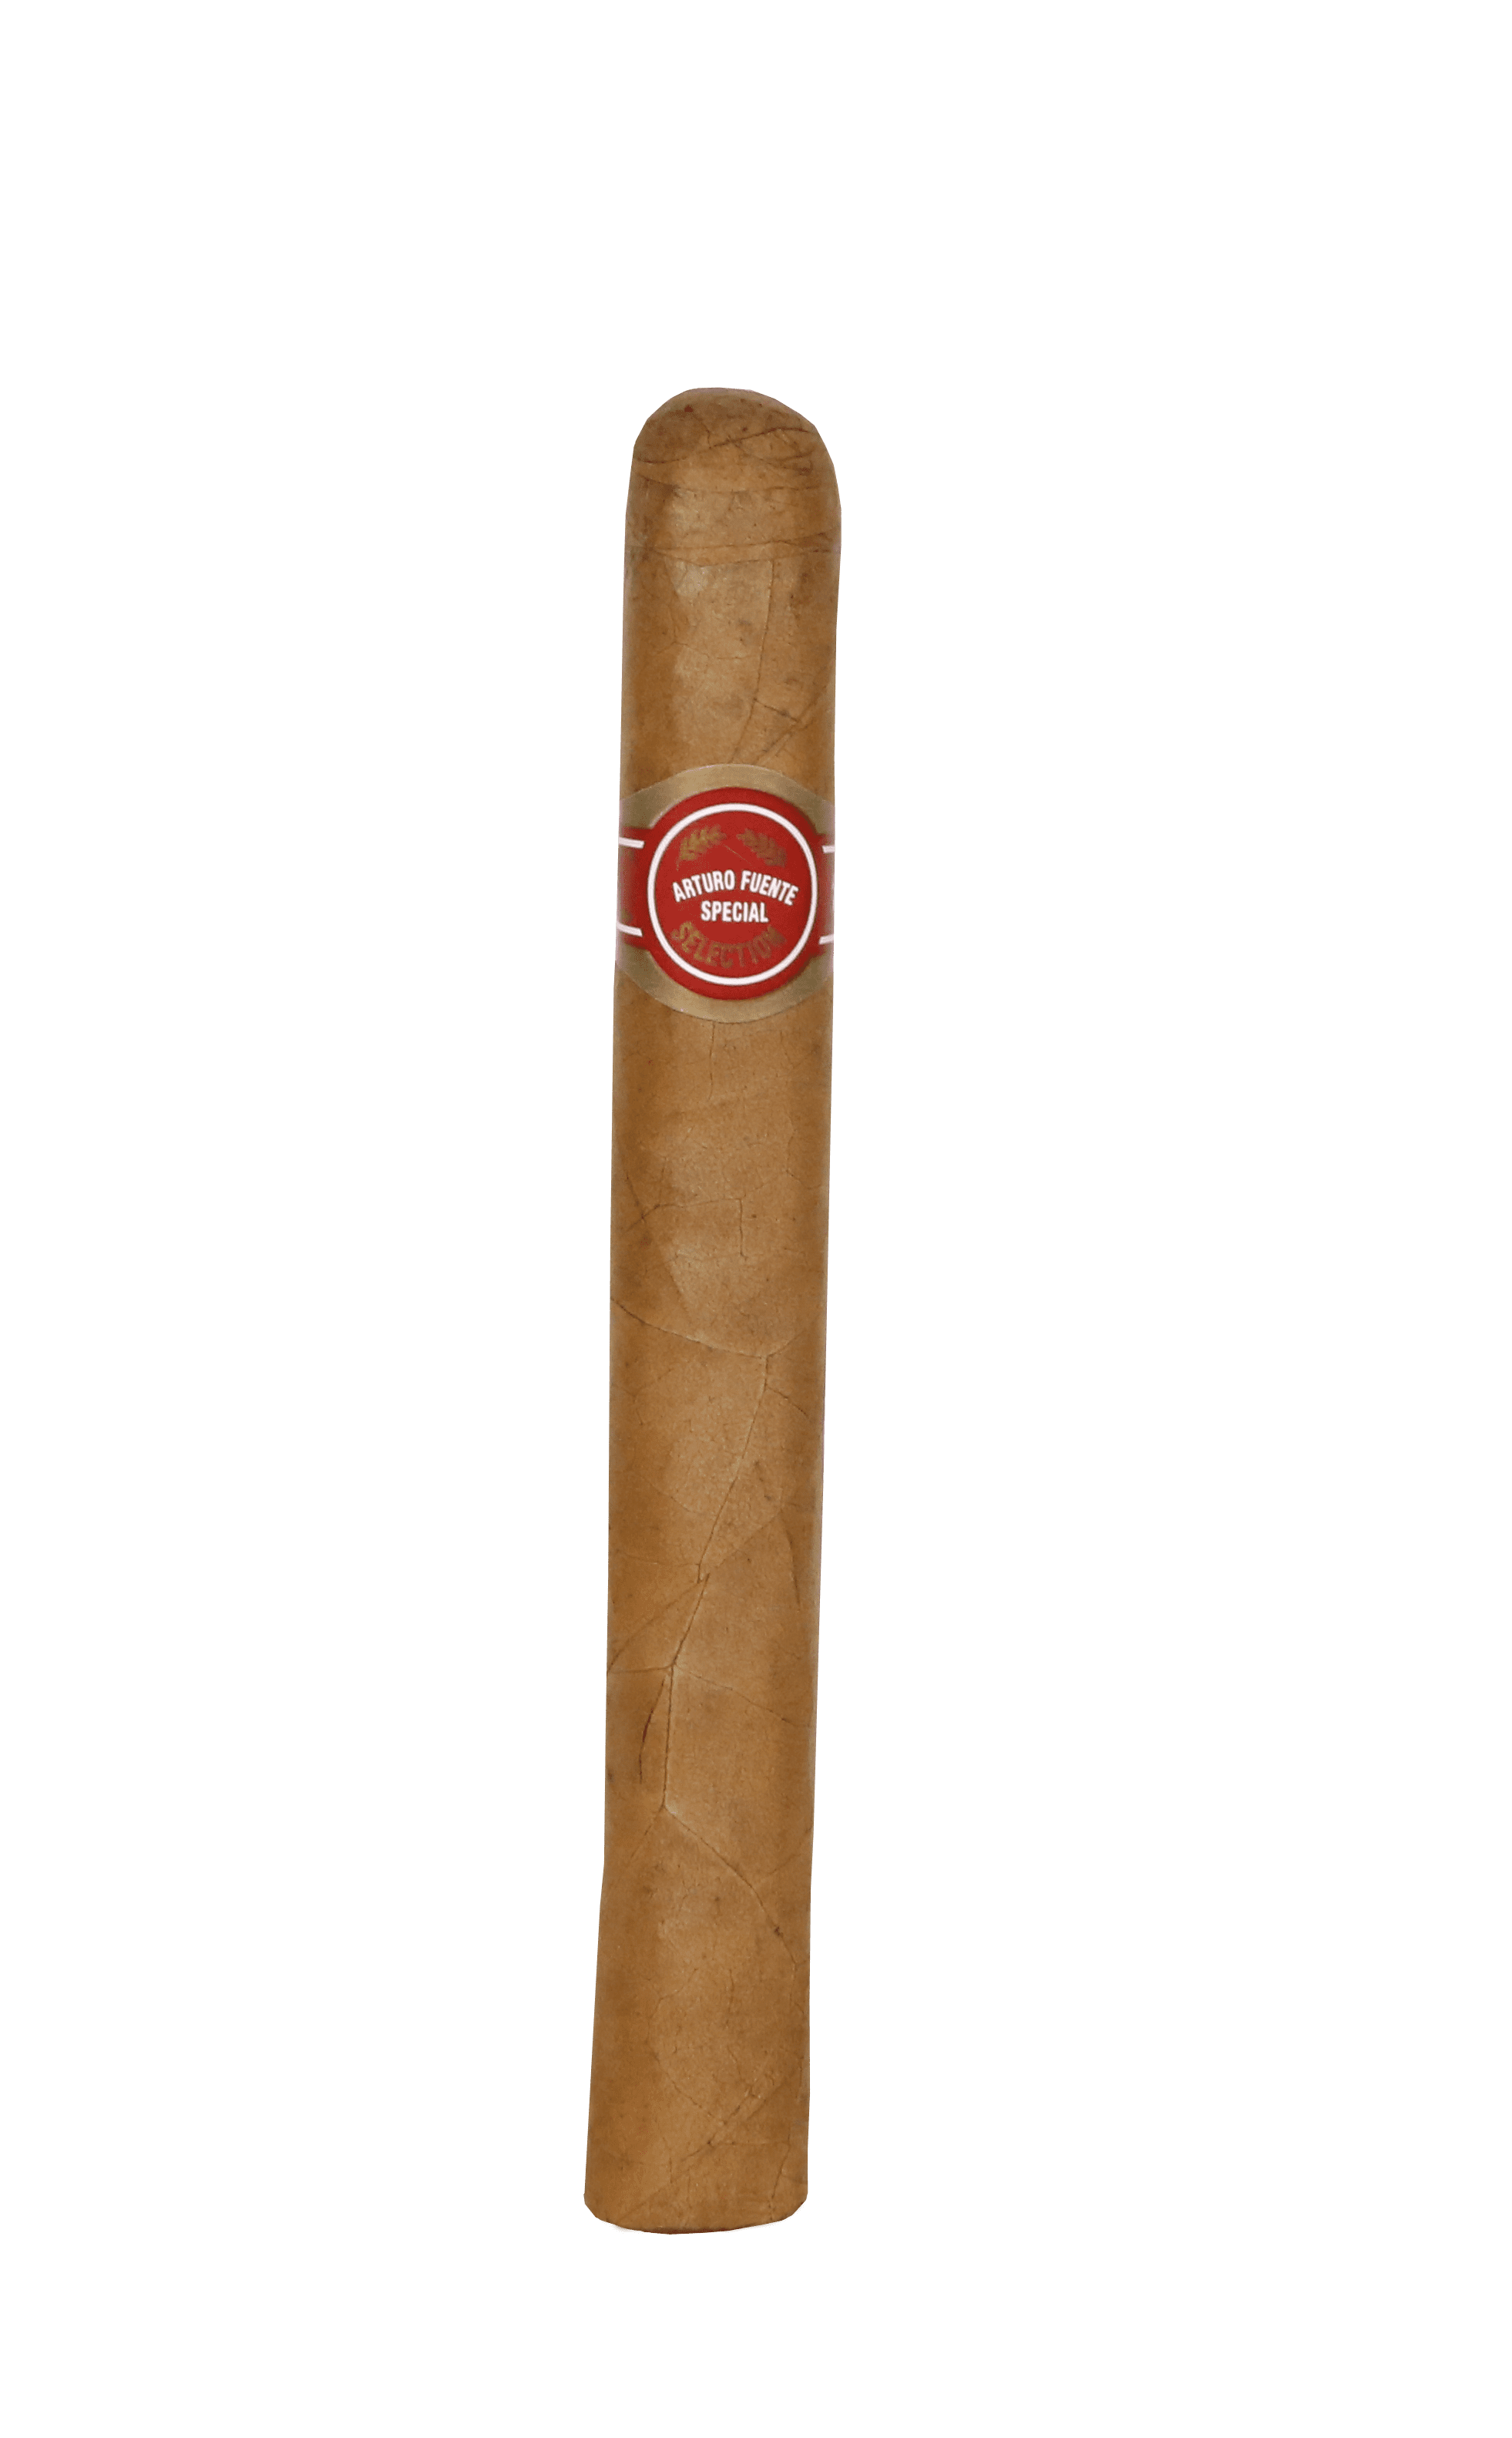 Single Arturo Fuente Brevas Royales cigar